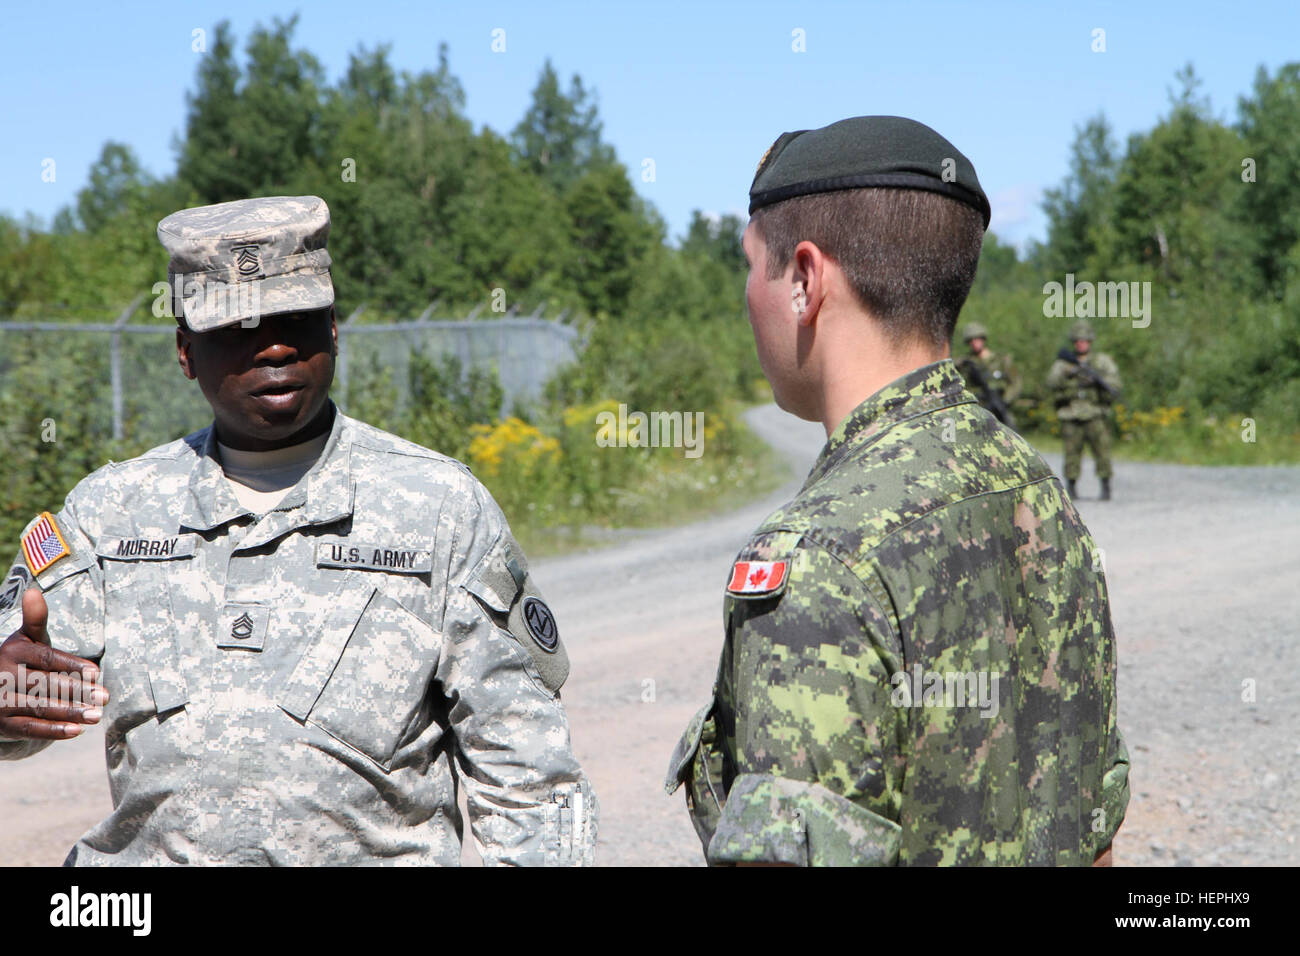 Sgt. 1. Classe Oniel Murray del Fort Leonard Wood, Mo., 1° Brigata ingegneri discute le differenze nelle tecniche di insegnamento con il suo omologo canadese, forze armate canadesi sergente Corey Struss presso le forze canadesi scuola di ingegneria militare (CFSME) a forze canadesi Gagetown di base in New Brunswick, Canada, come parte di un istruttore per iniziativa di scambio tra gli Stati Uniti e l CFSME, capeggiate da 1 ingegneri dei vigili del fuoco. Esercito brigata di riserva uno scambio di idee con omologhi canadesi 150729-A-KD890-378 Foto Stock